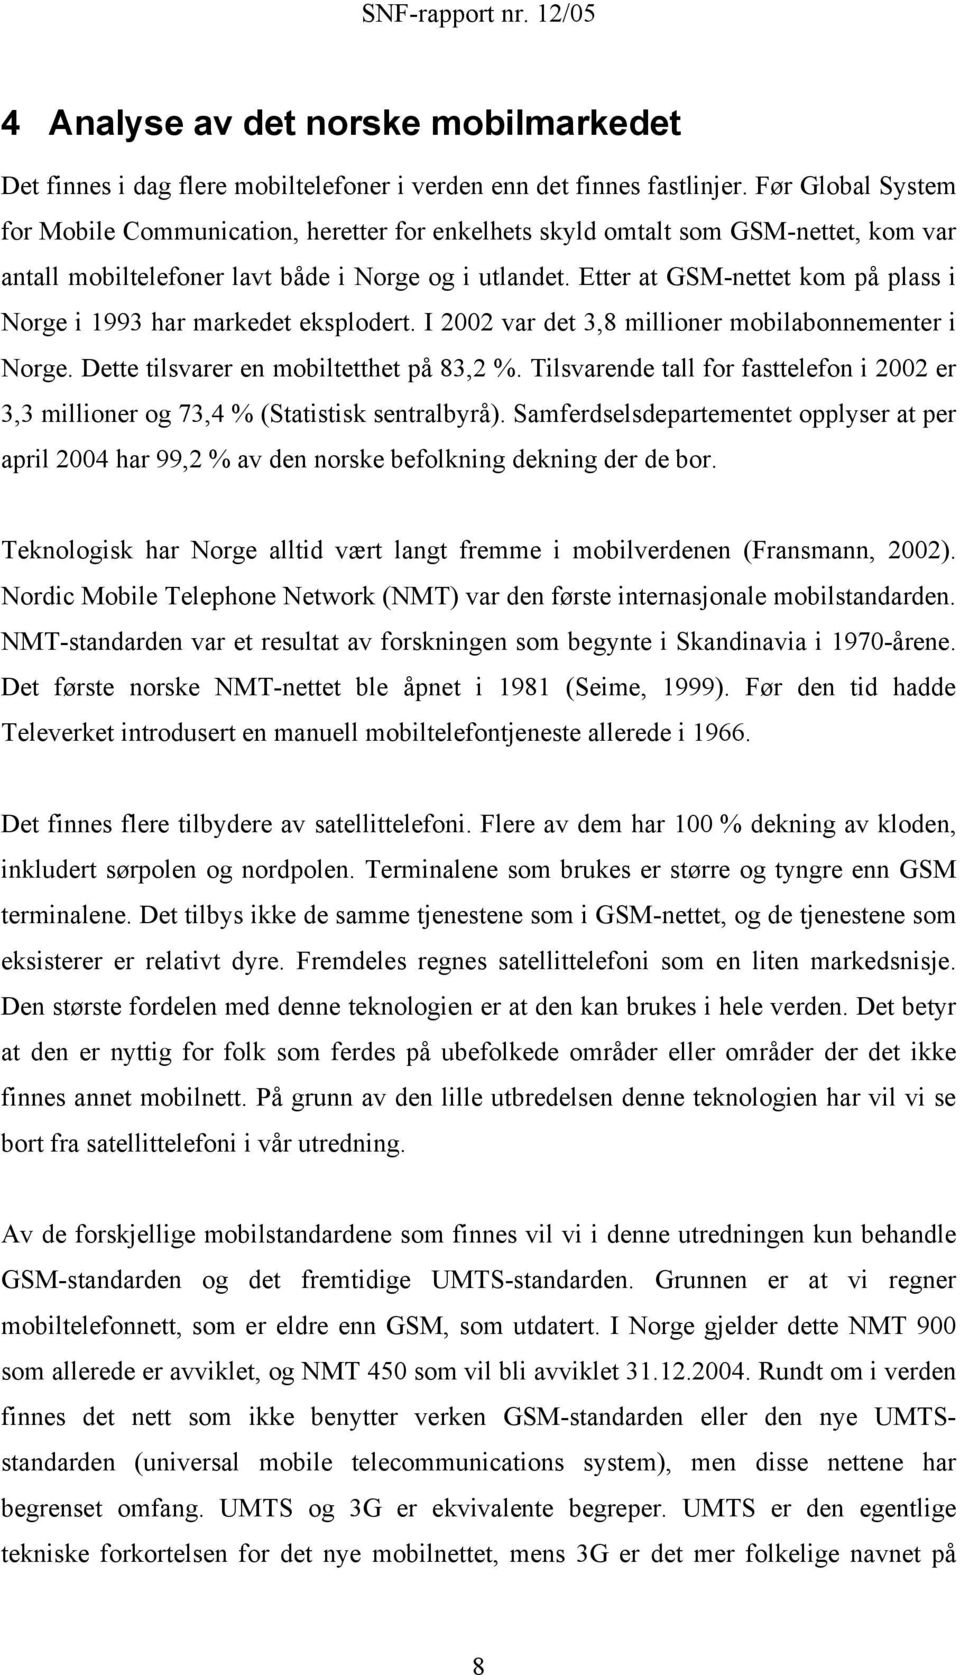 Eer a GSM-nee kom på plass i Norge i 993 har markede eksploder. I 2002 var de 3,8 millioner mobilabonnemener i Norge. Dee ilsvarer en mobilehe på 83,2 %.